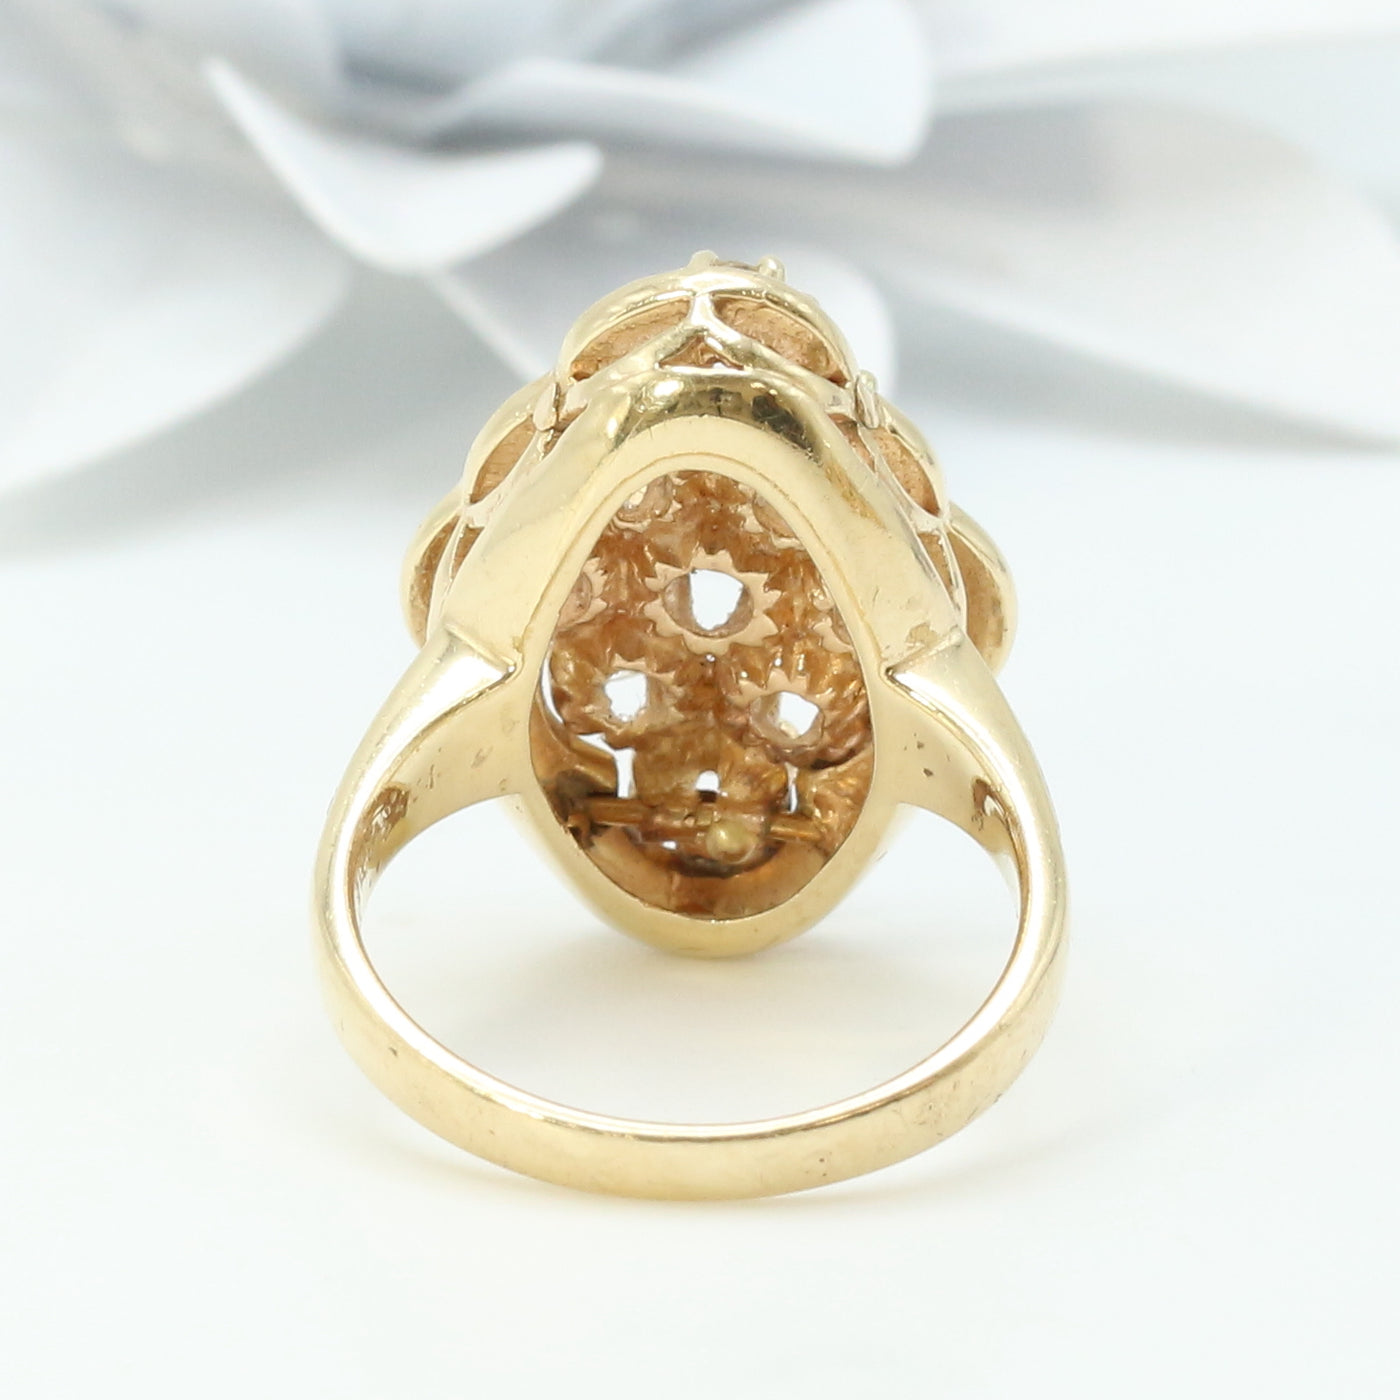 French Enameled Diamond Ring